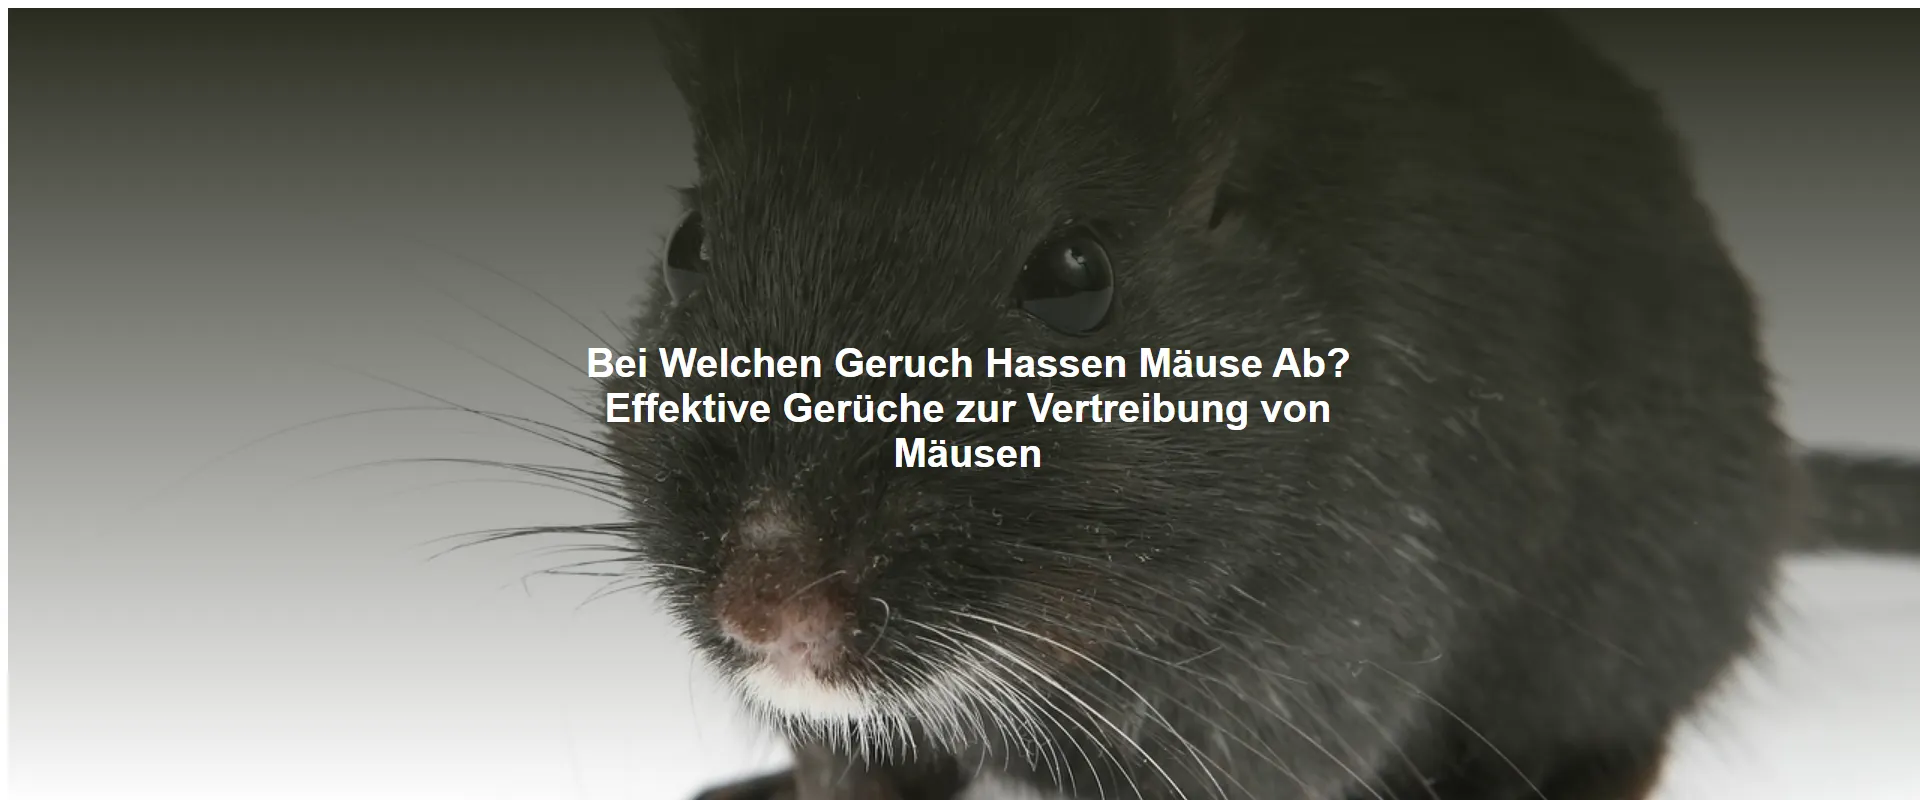 Bei Welchen Geruch Hassen Mäuse Ab? Effektive Gerüche zur Vertreibung von Mäusen